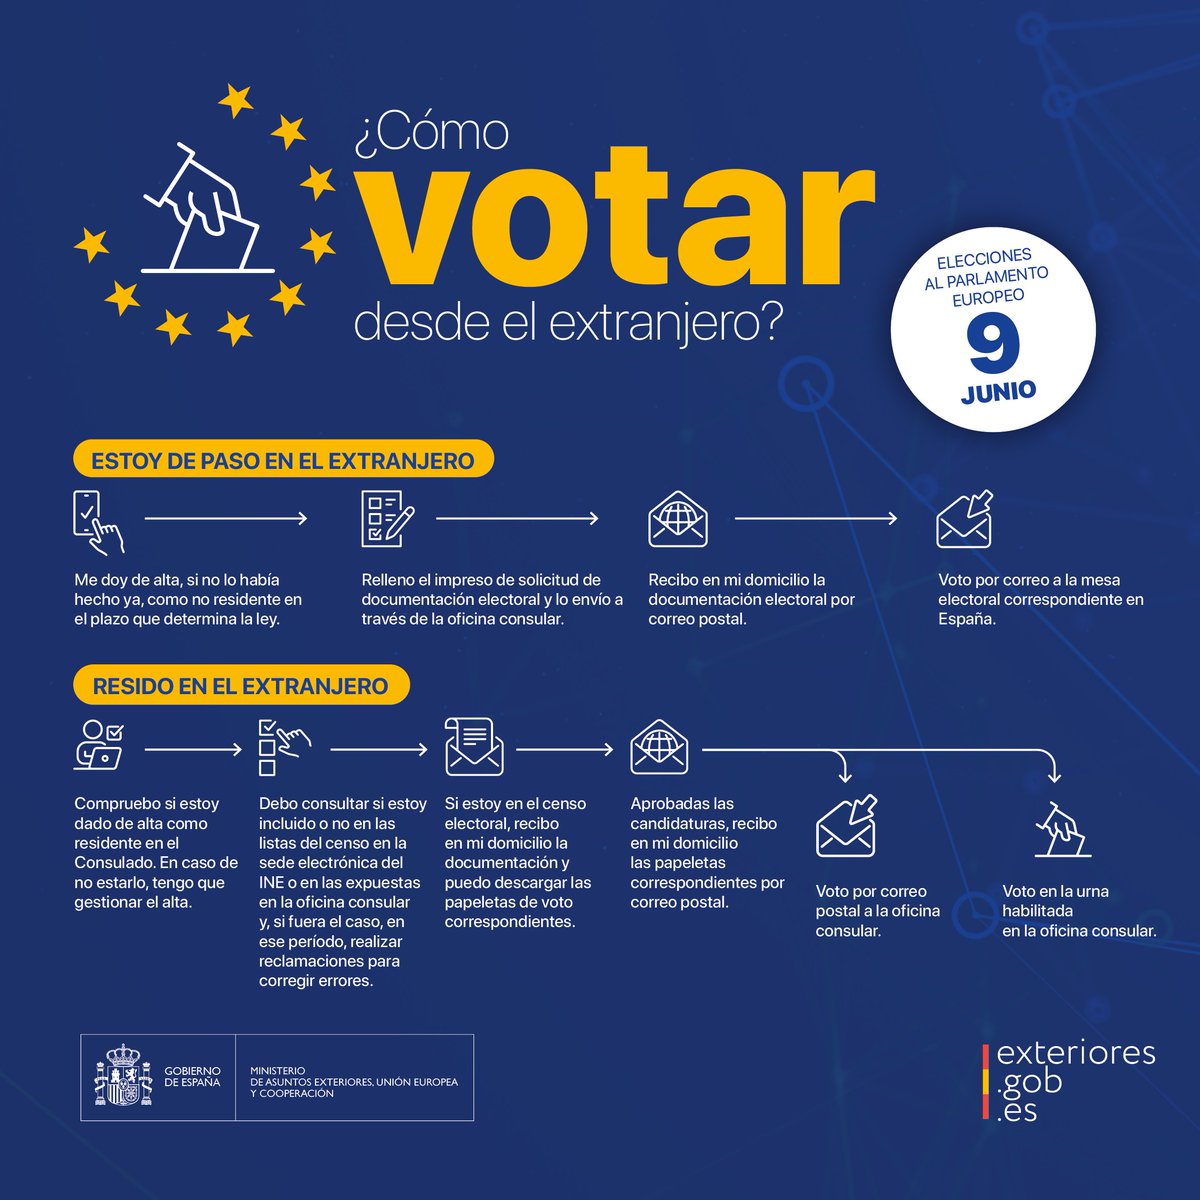 #VotoCERA: si eres español residente en nuestra circunscripción y tienes derecho a voto en las #EleccionesEuropeas #EleccionesUE2024 del #9J #VotoporCorreo al Consulado: plazo no más tarde del 4 de junio. Más ℹ️ en exteriores.gob.es/Embajadas/tegu… #VotoExterior #9J